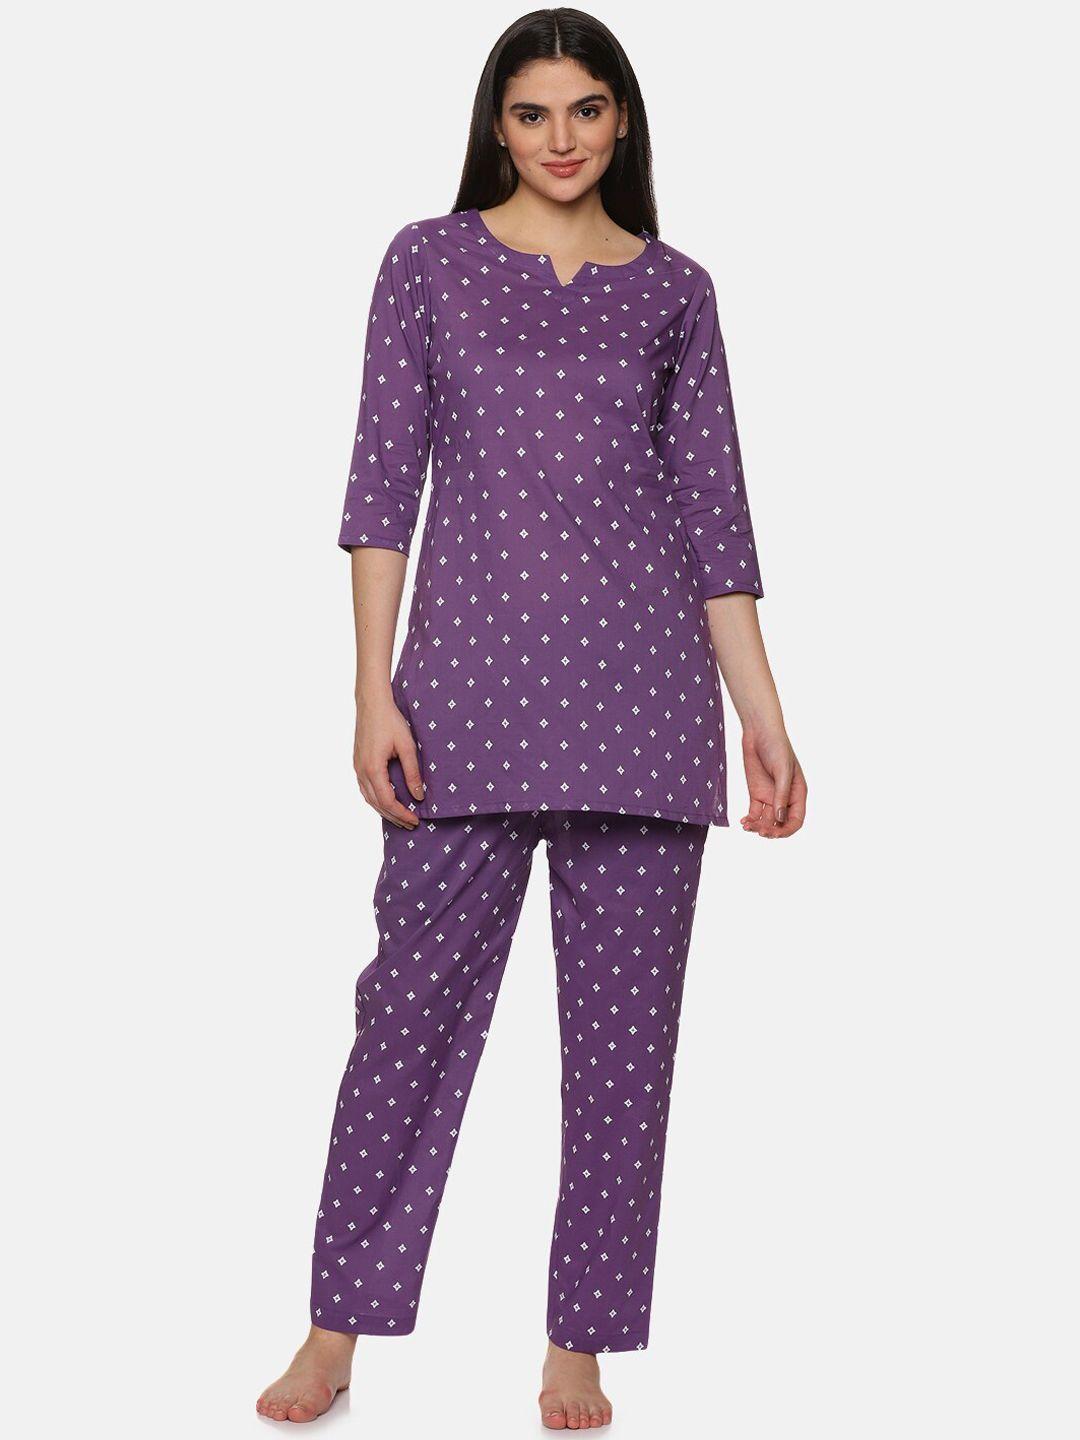 palakh geometric printed pure cotton kurti & pyjamas